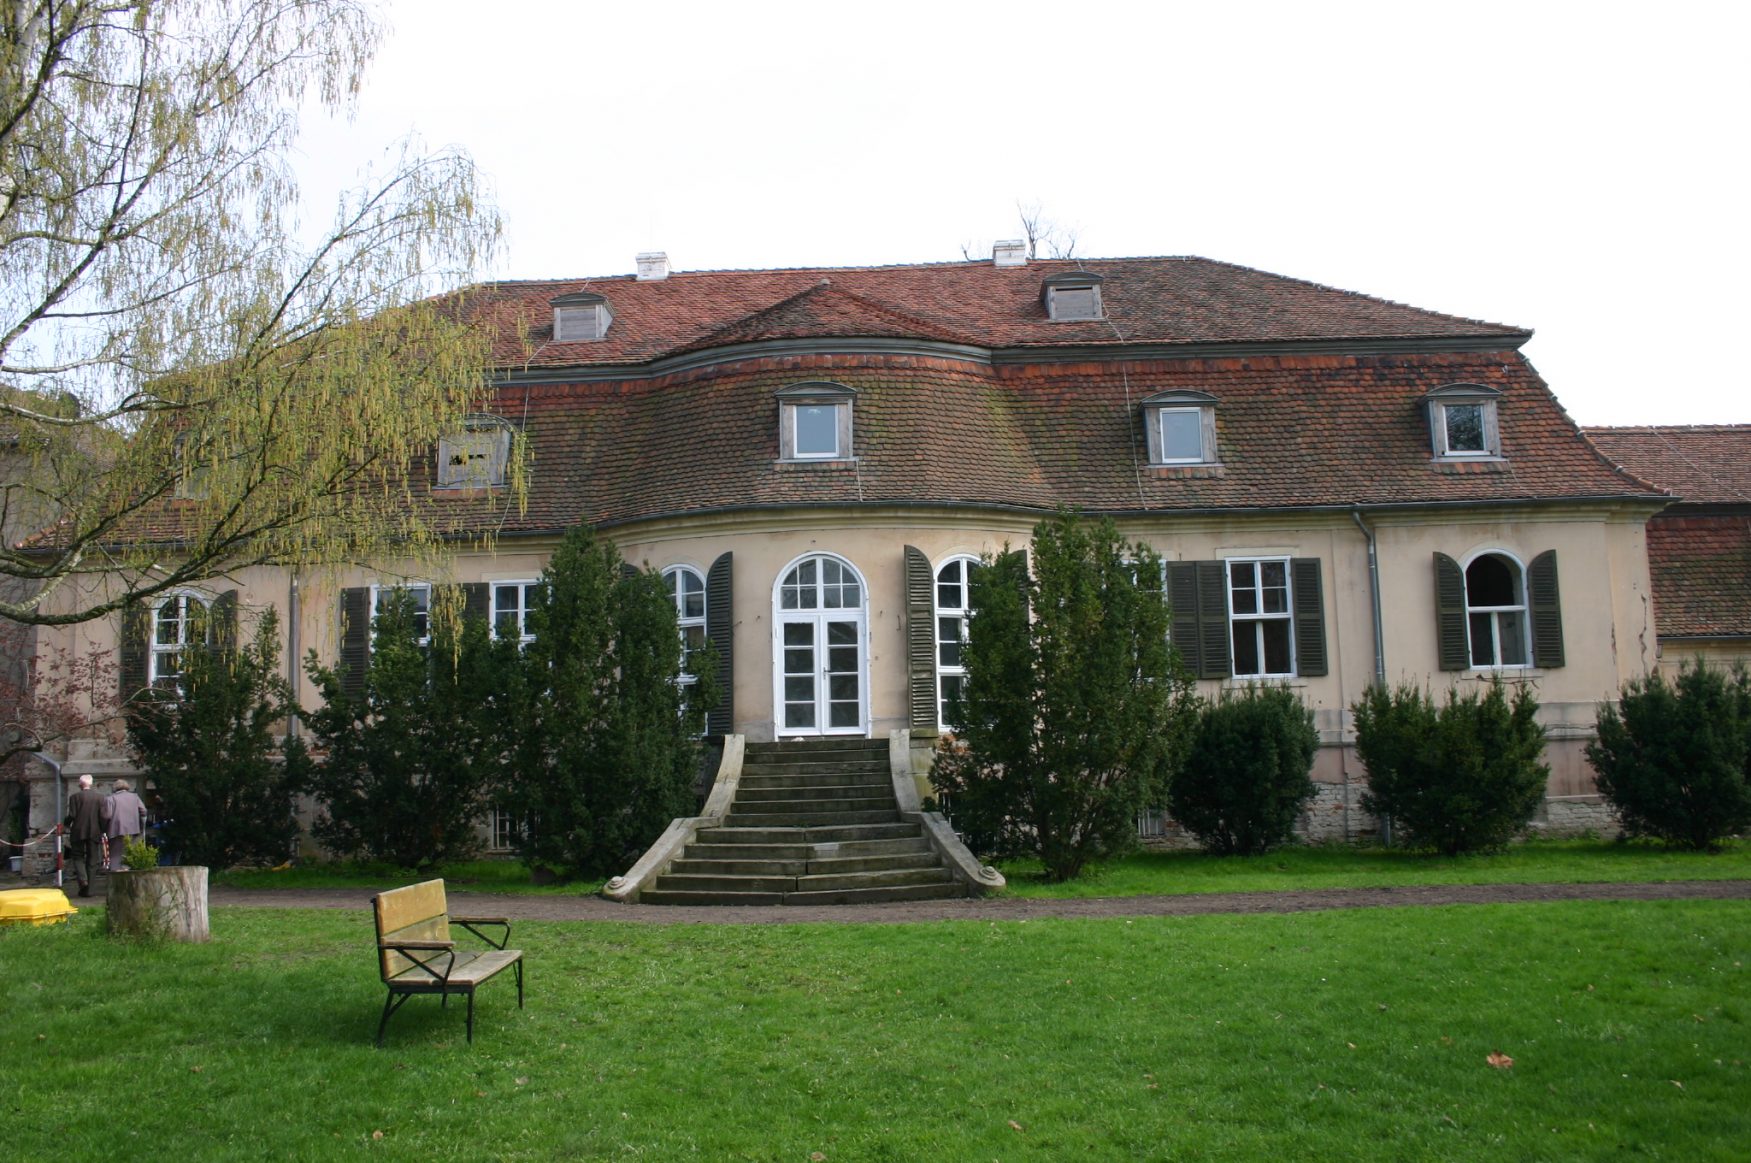 Herrenhaus in Groß Kreutz, Foto: D.Weirauch